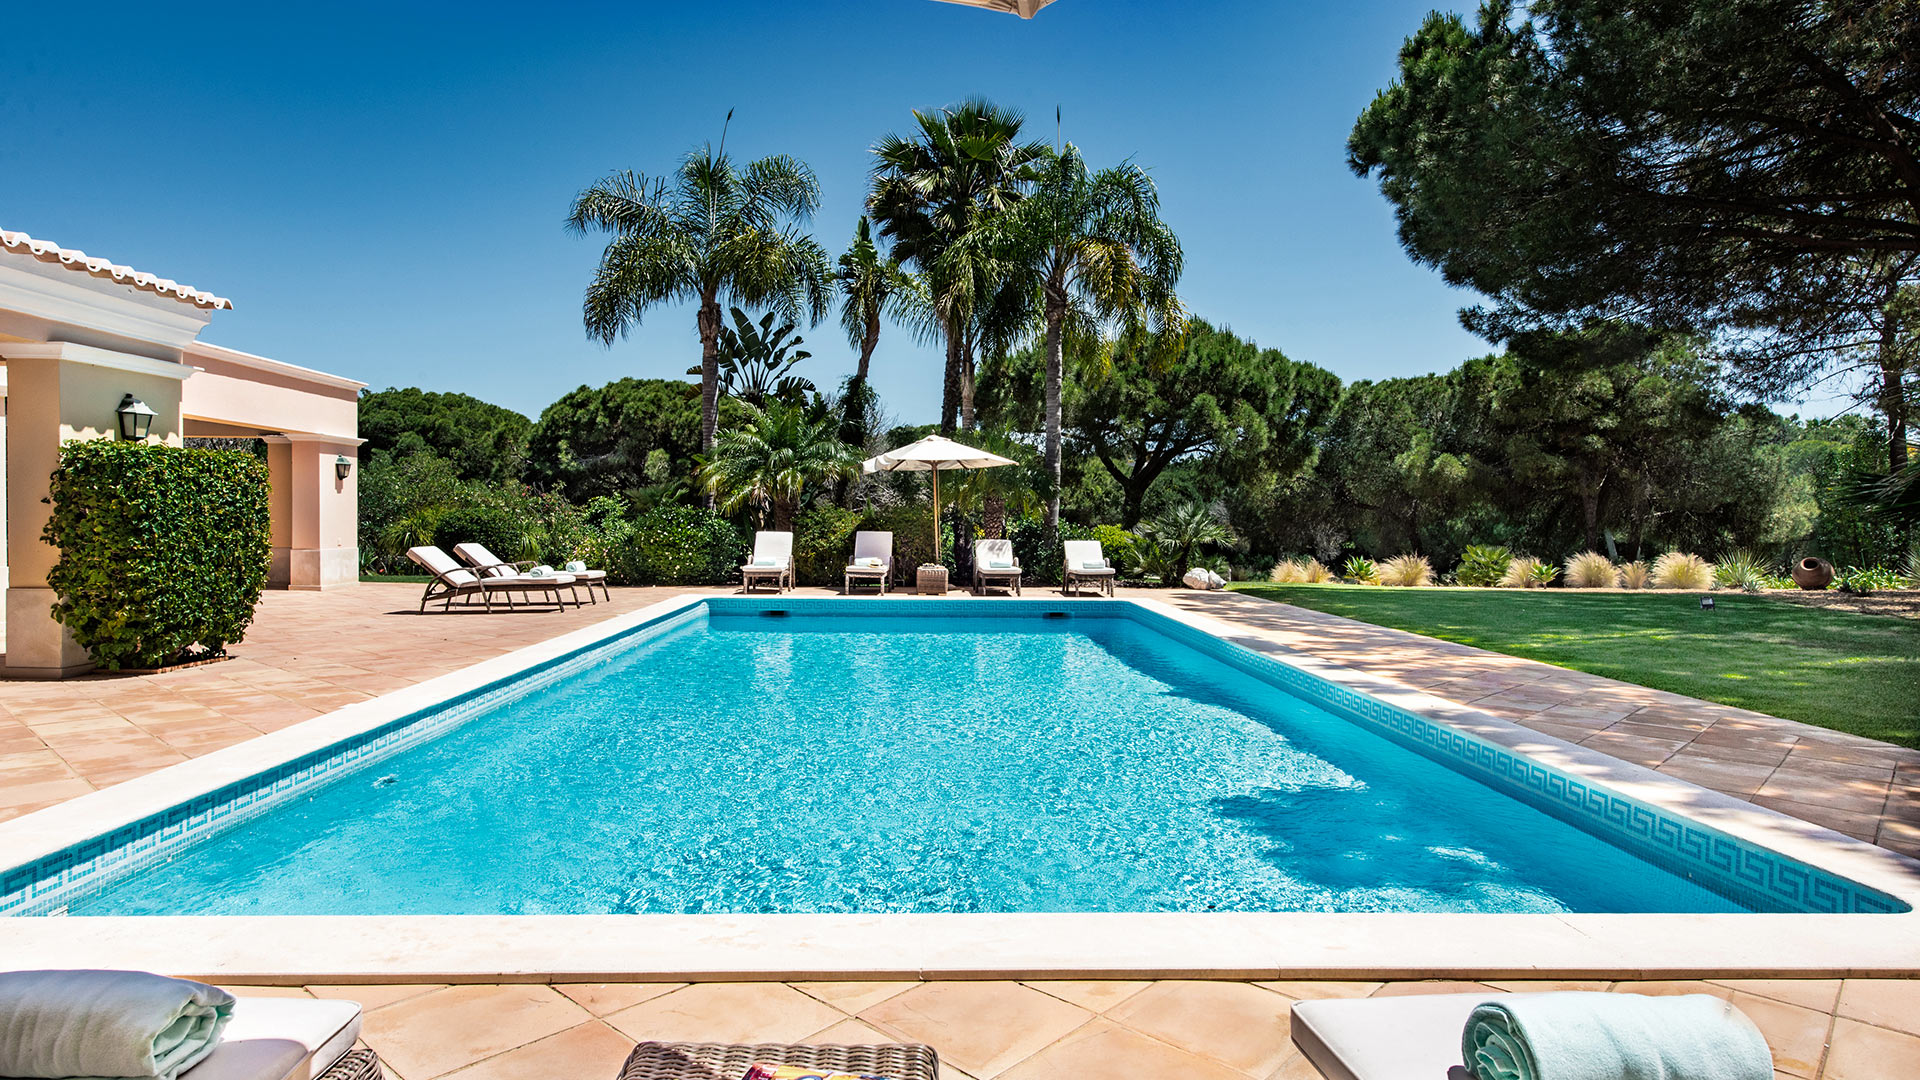 Villa Villa Paci, Rental in Algarve